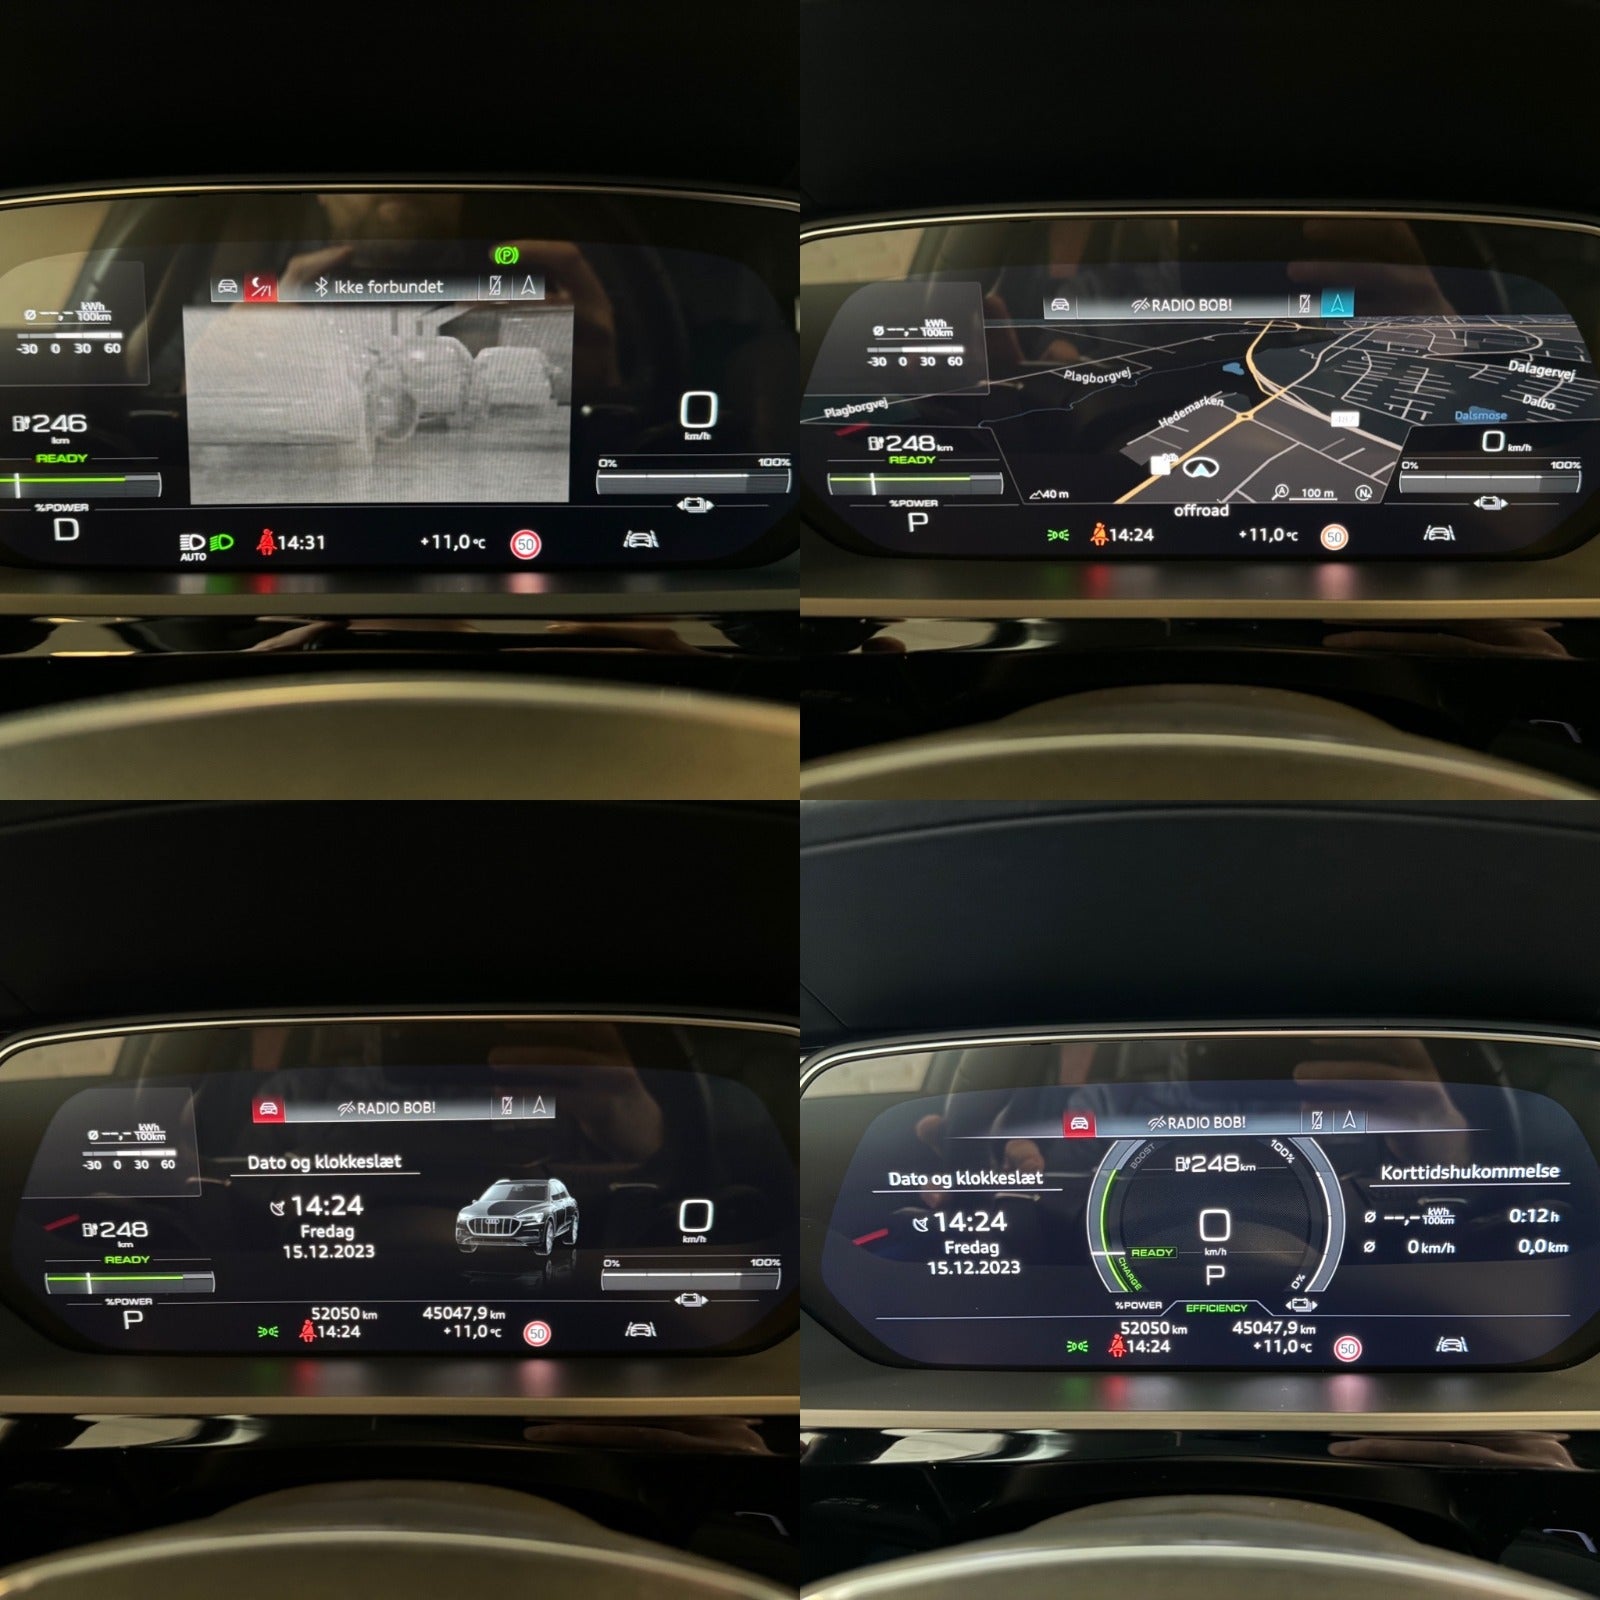 Audi e-tron Advanced quattro